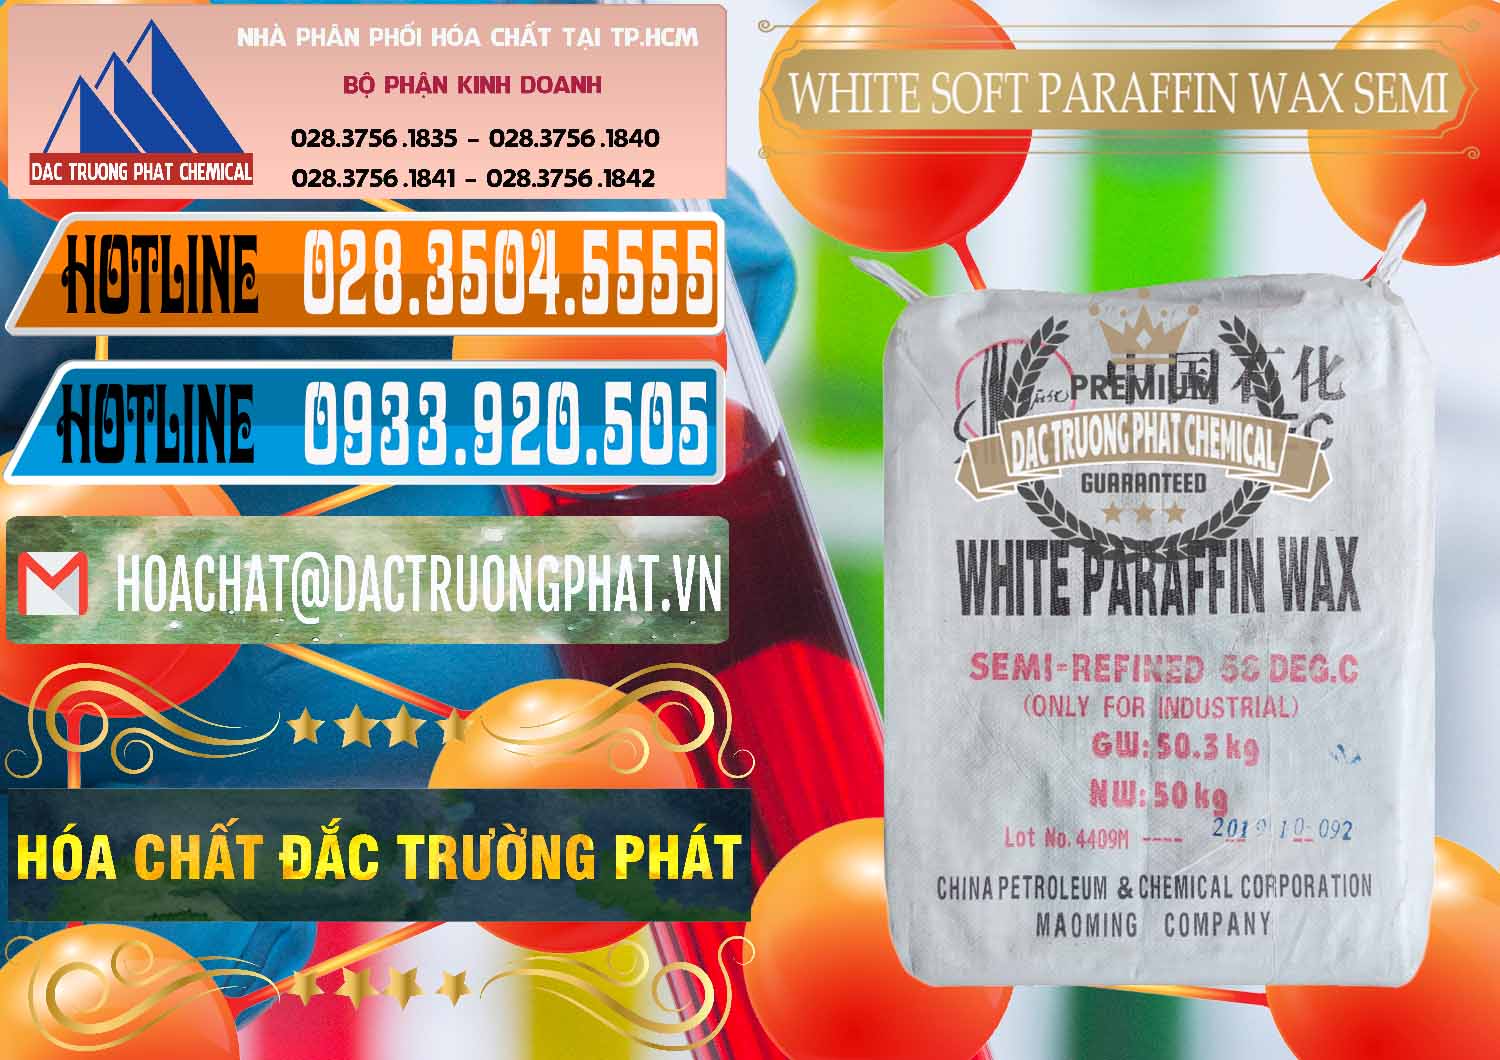 Nhà phân phối & bán Sáp Paraffin Wax Sinopec Trung Quốc China - 0328 - Đơn vị cung cấp - kinh doanh hóa chất tại TP.HCM - stmp.net